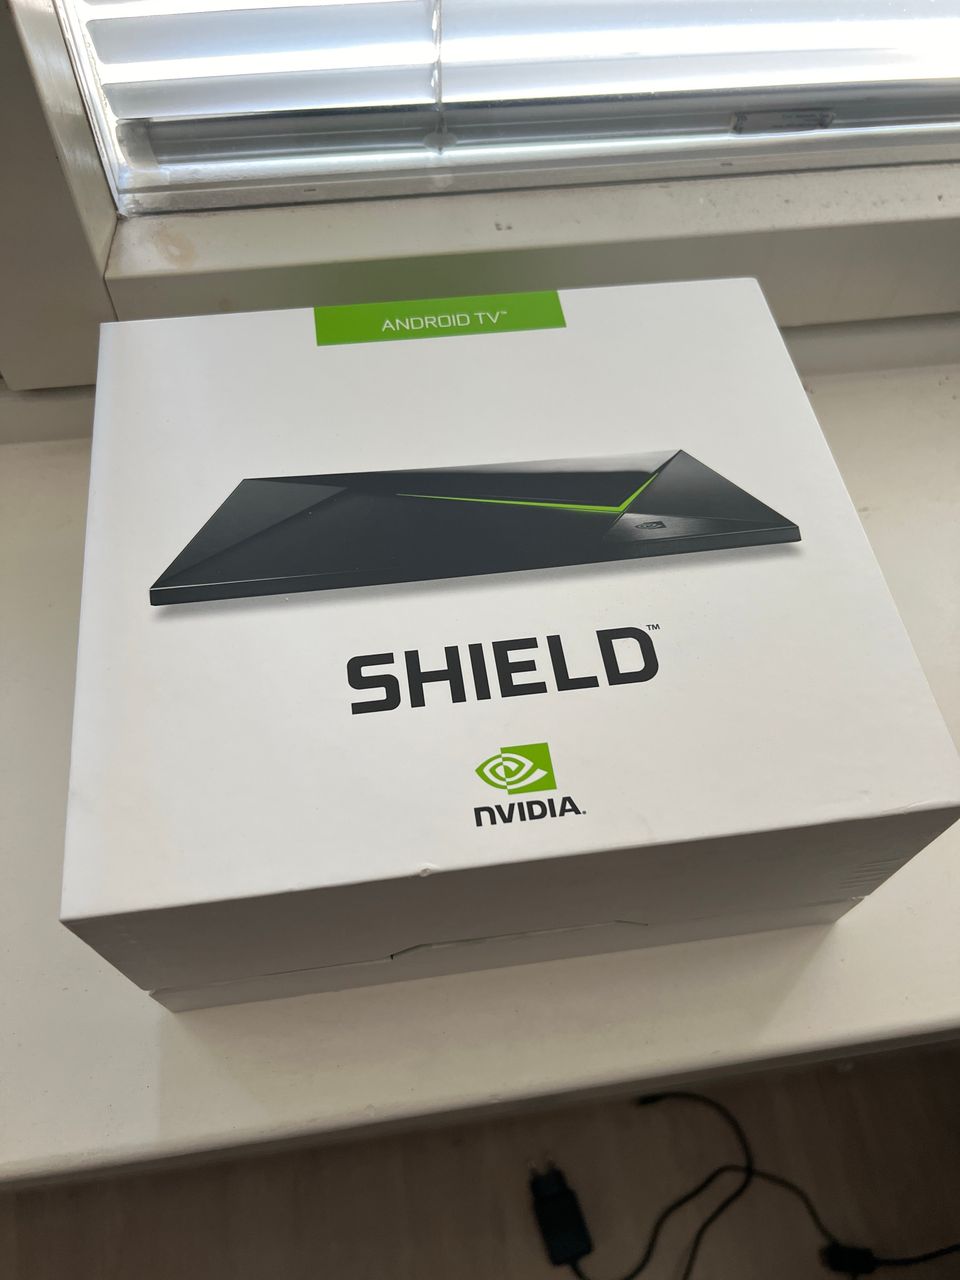 Nvidia shield